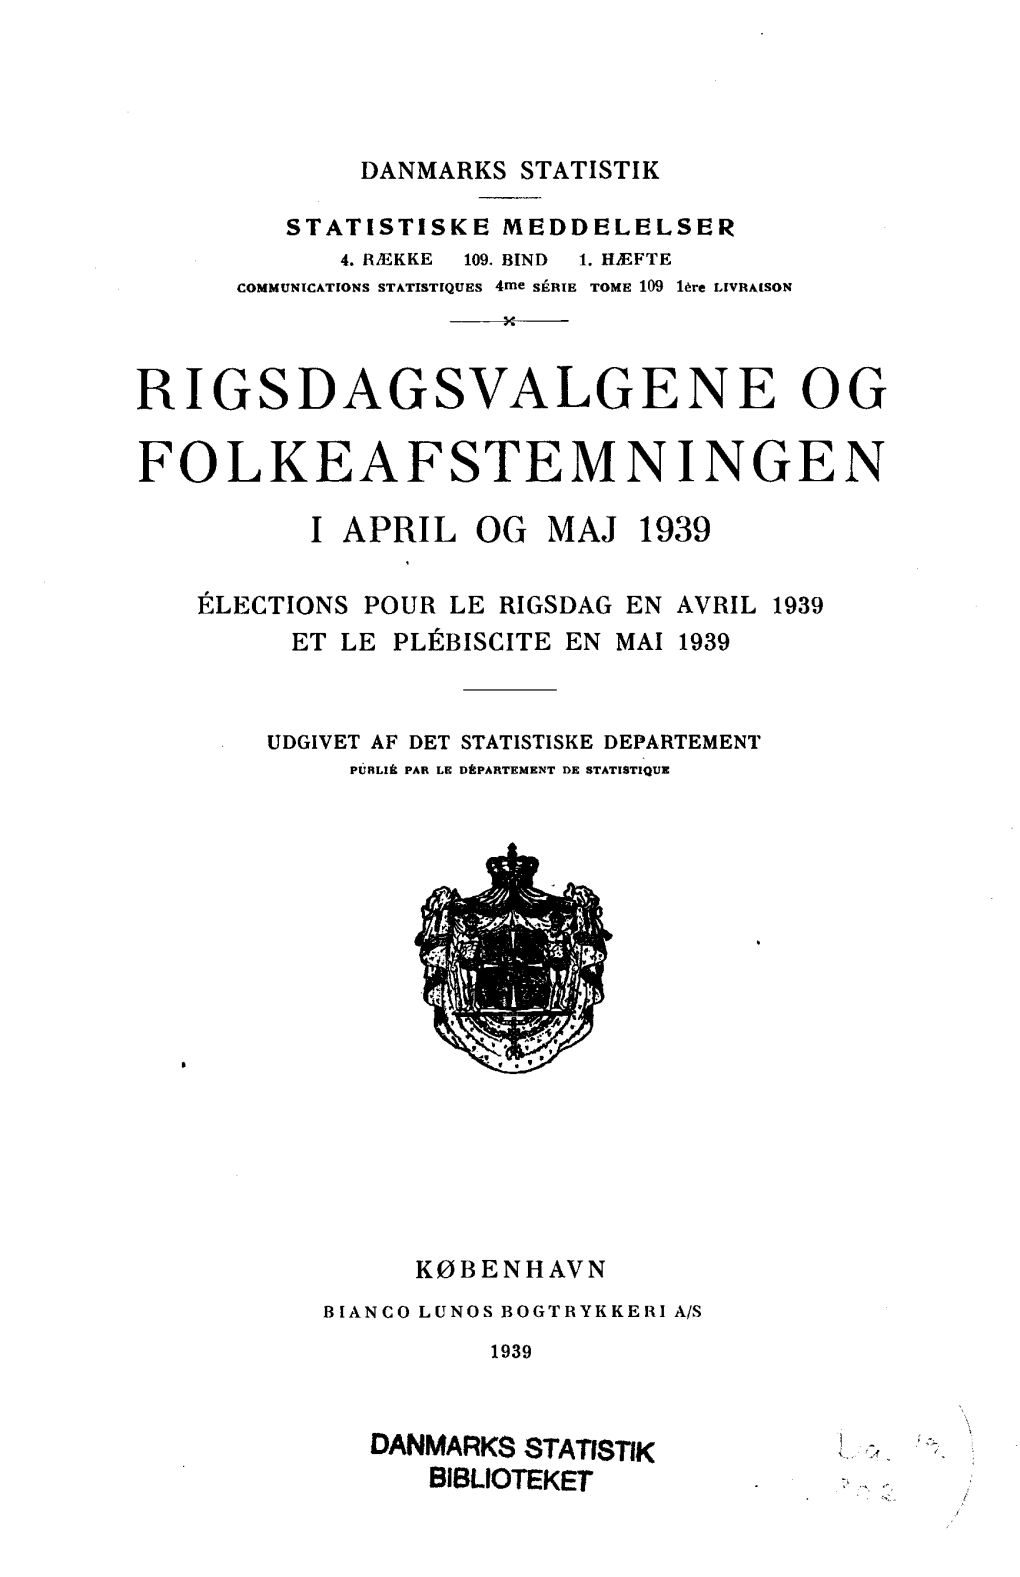 Rigsdagsvalgene Og Folkeafstemningen I April Og Maj 1939